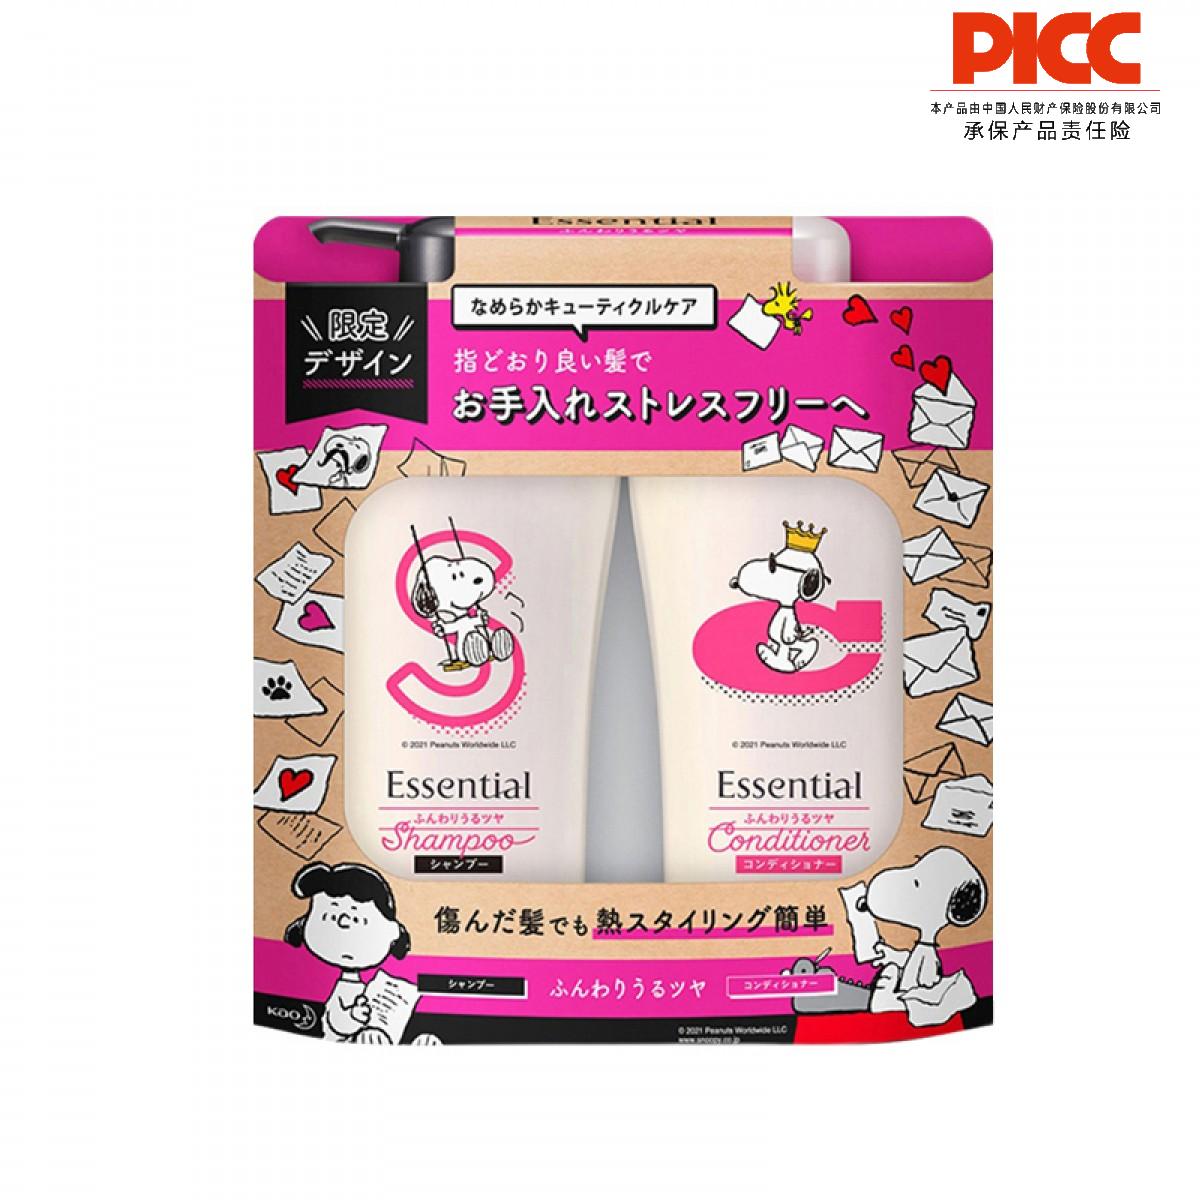 【保稅】日本KAO花王Essential史努比粉色清爽洗發水+護發素480ml+480ml